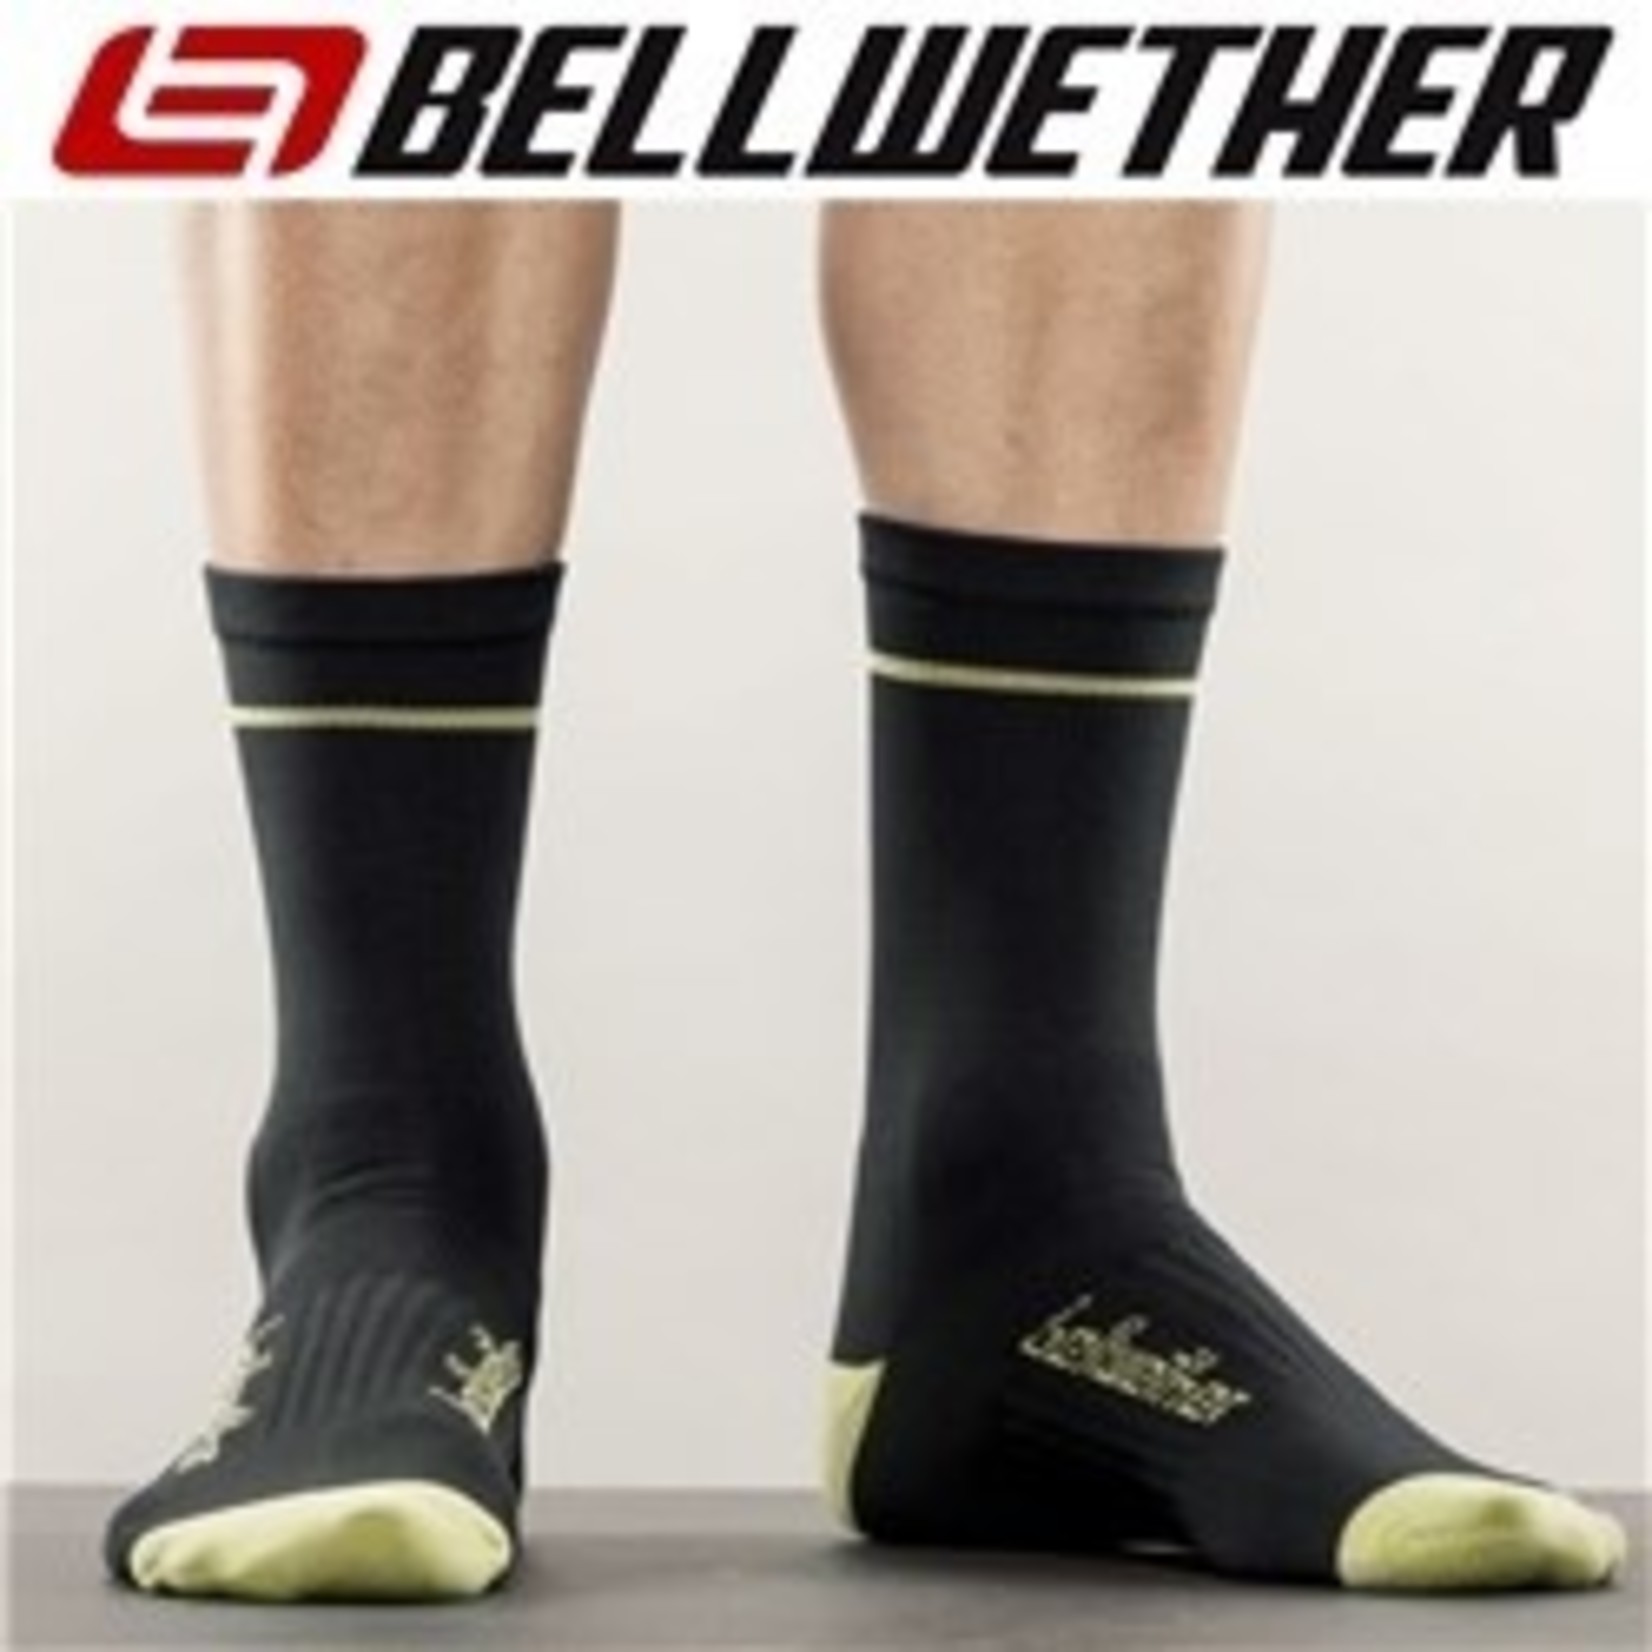 Bellwether Bellwether Cycling Sock - Optime Sock - Black/Hi-Vis